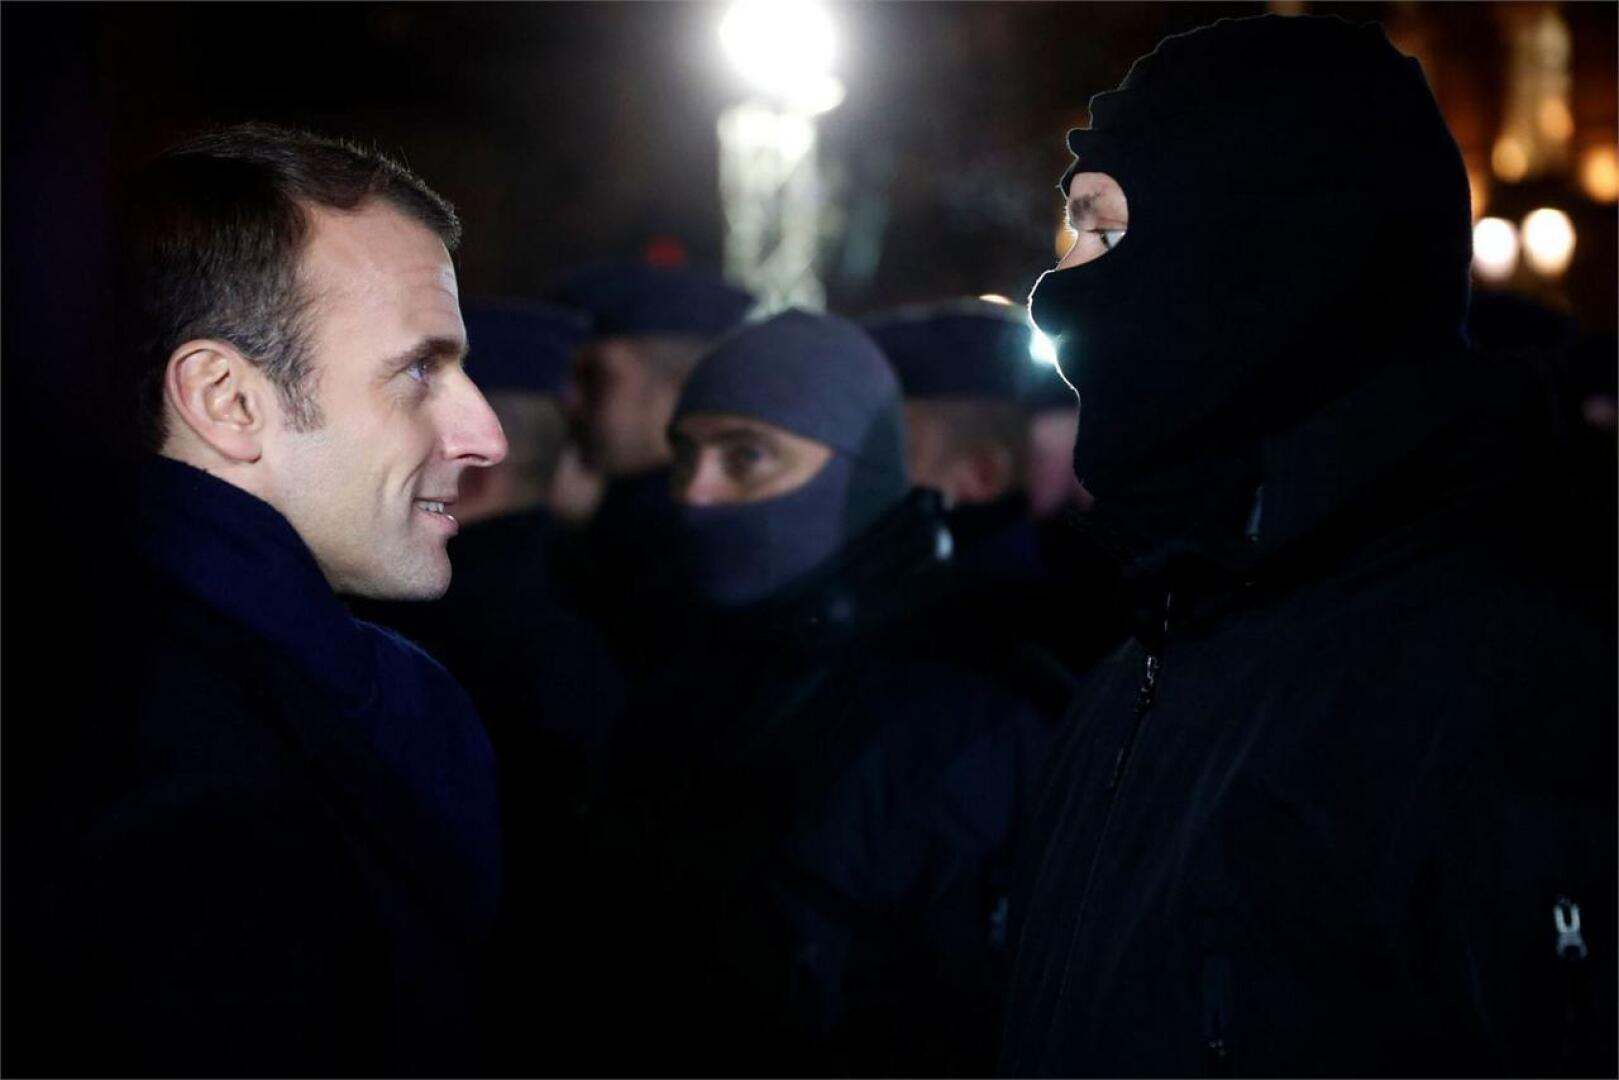 Ranskan presidentti Emmanuel Macron vieraili perjantaina Strasbourgissa ja tapasi muun muassa paikallisia poliiseja joulutorin lähellä. LEHTIKUVA/AFP 